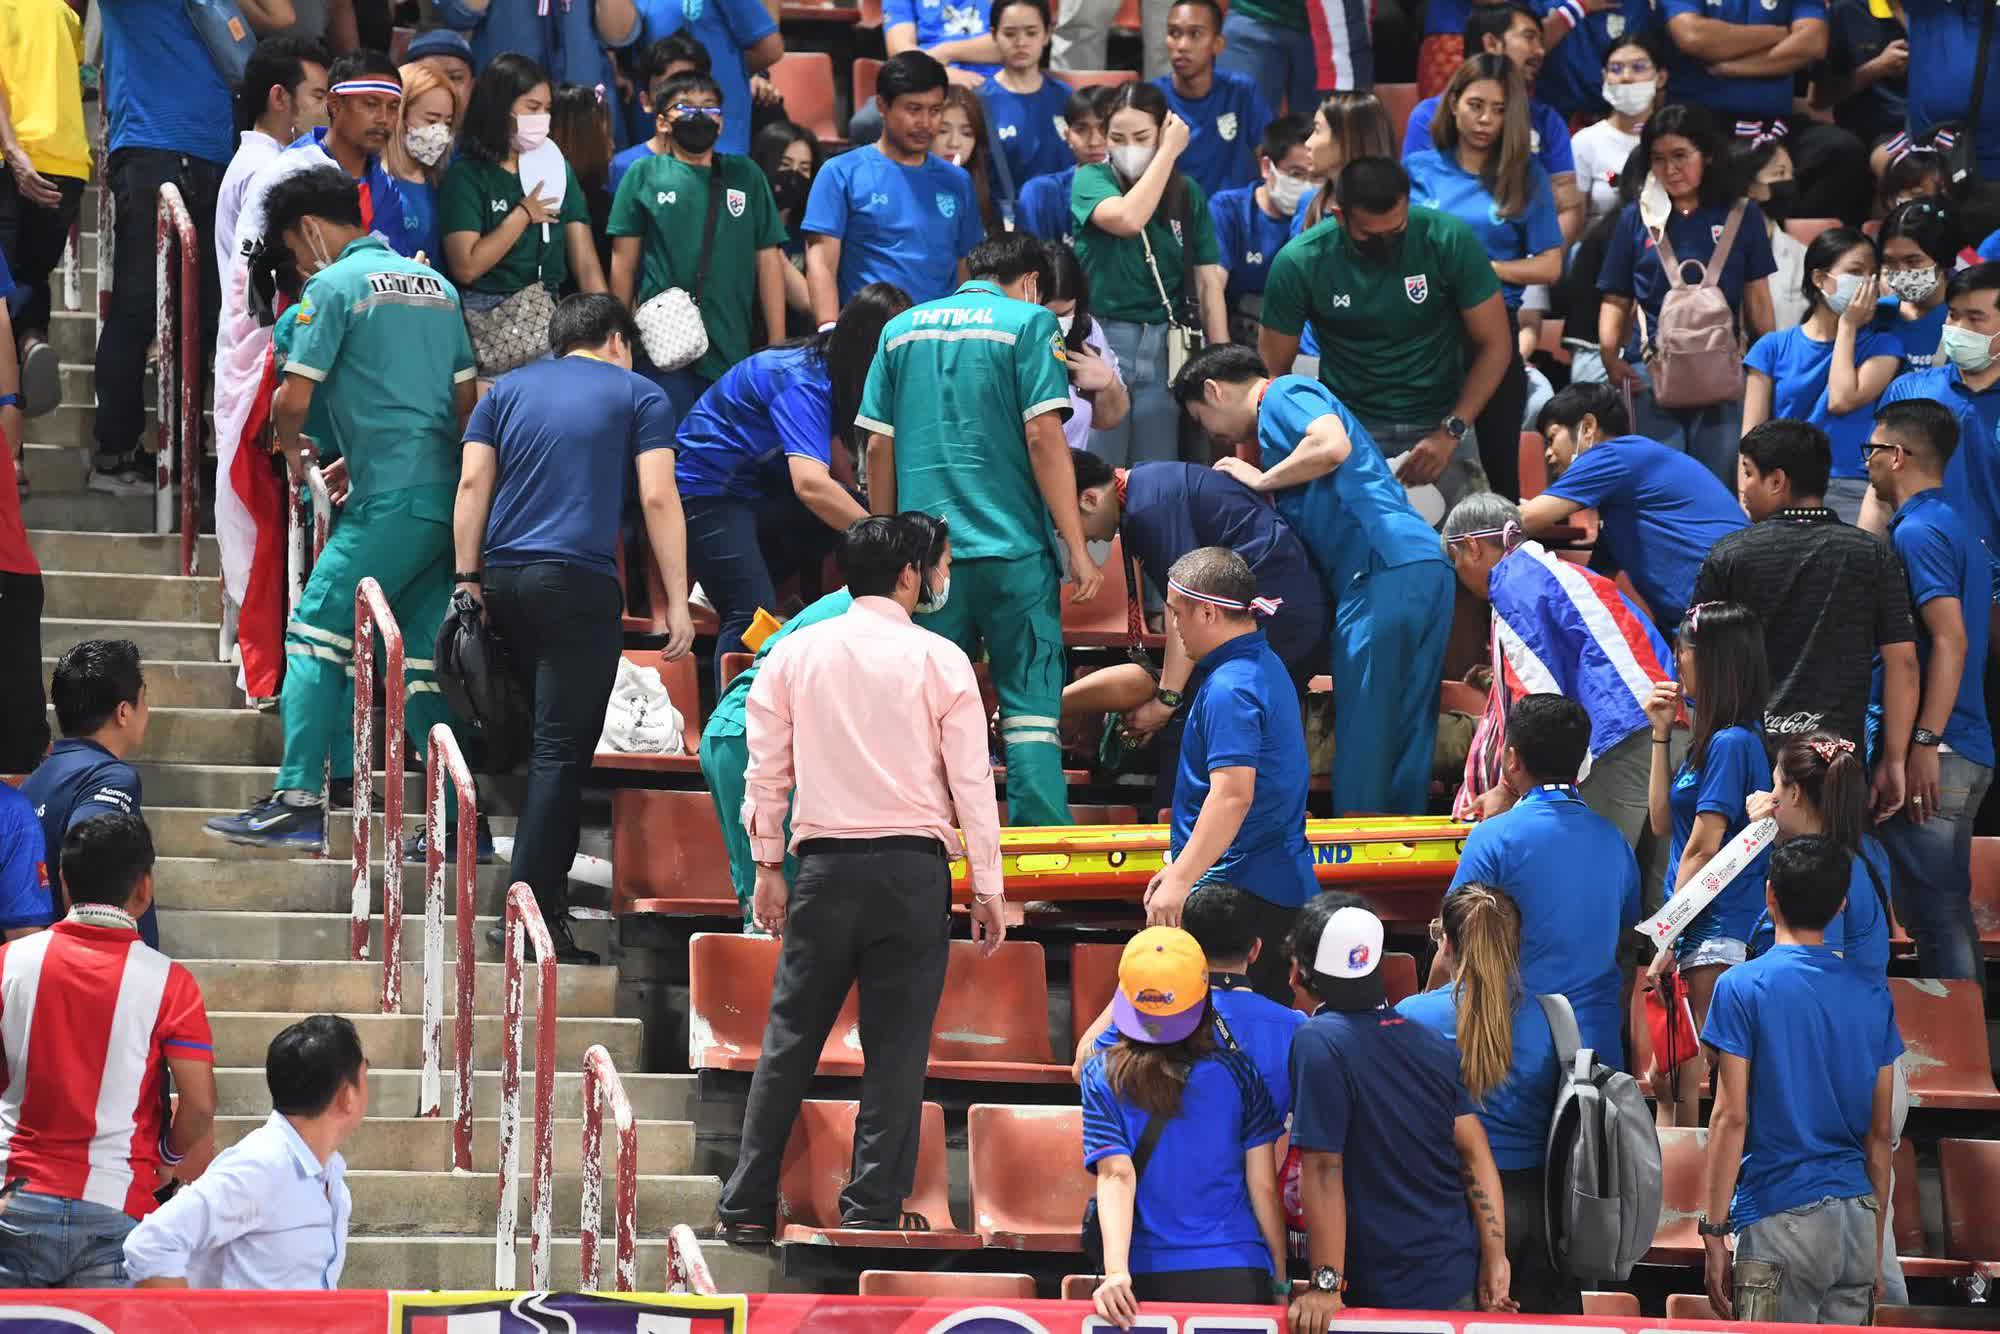 CĐV Thái Lan bất ngờ bị ngất, phải đi cấp cứu trong trận chung kết AFF Cup 2022 - Ảnh 2.